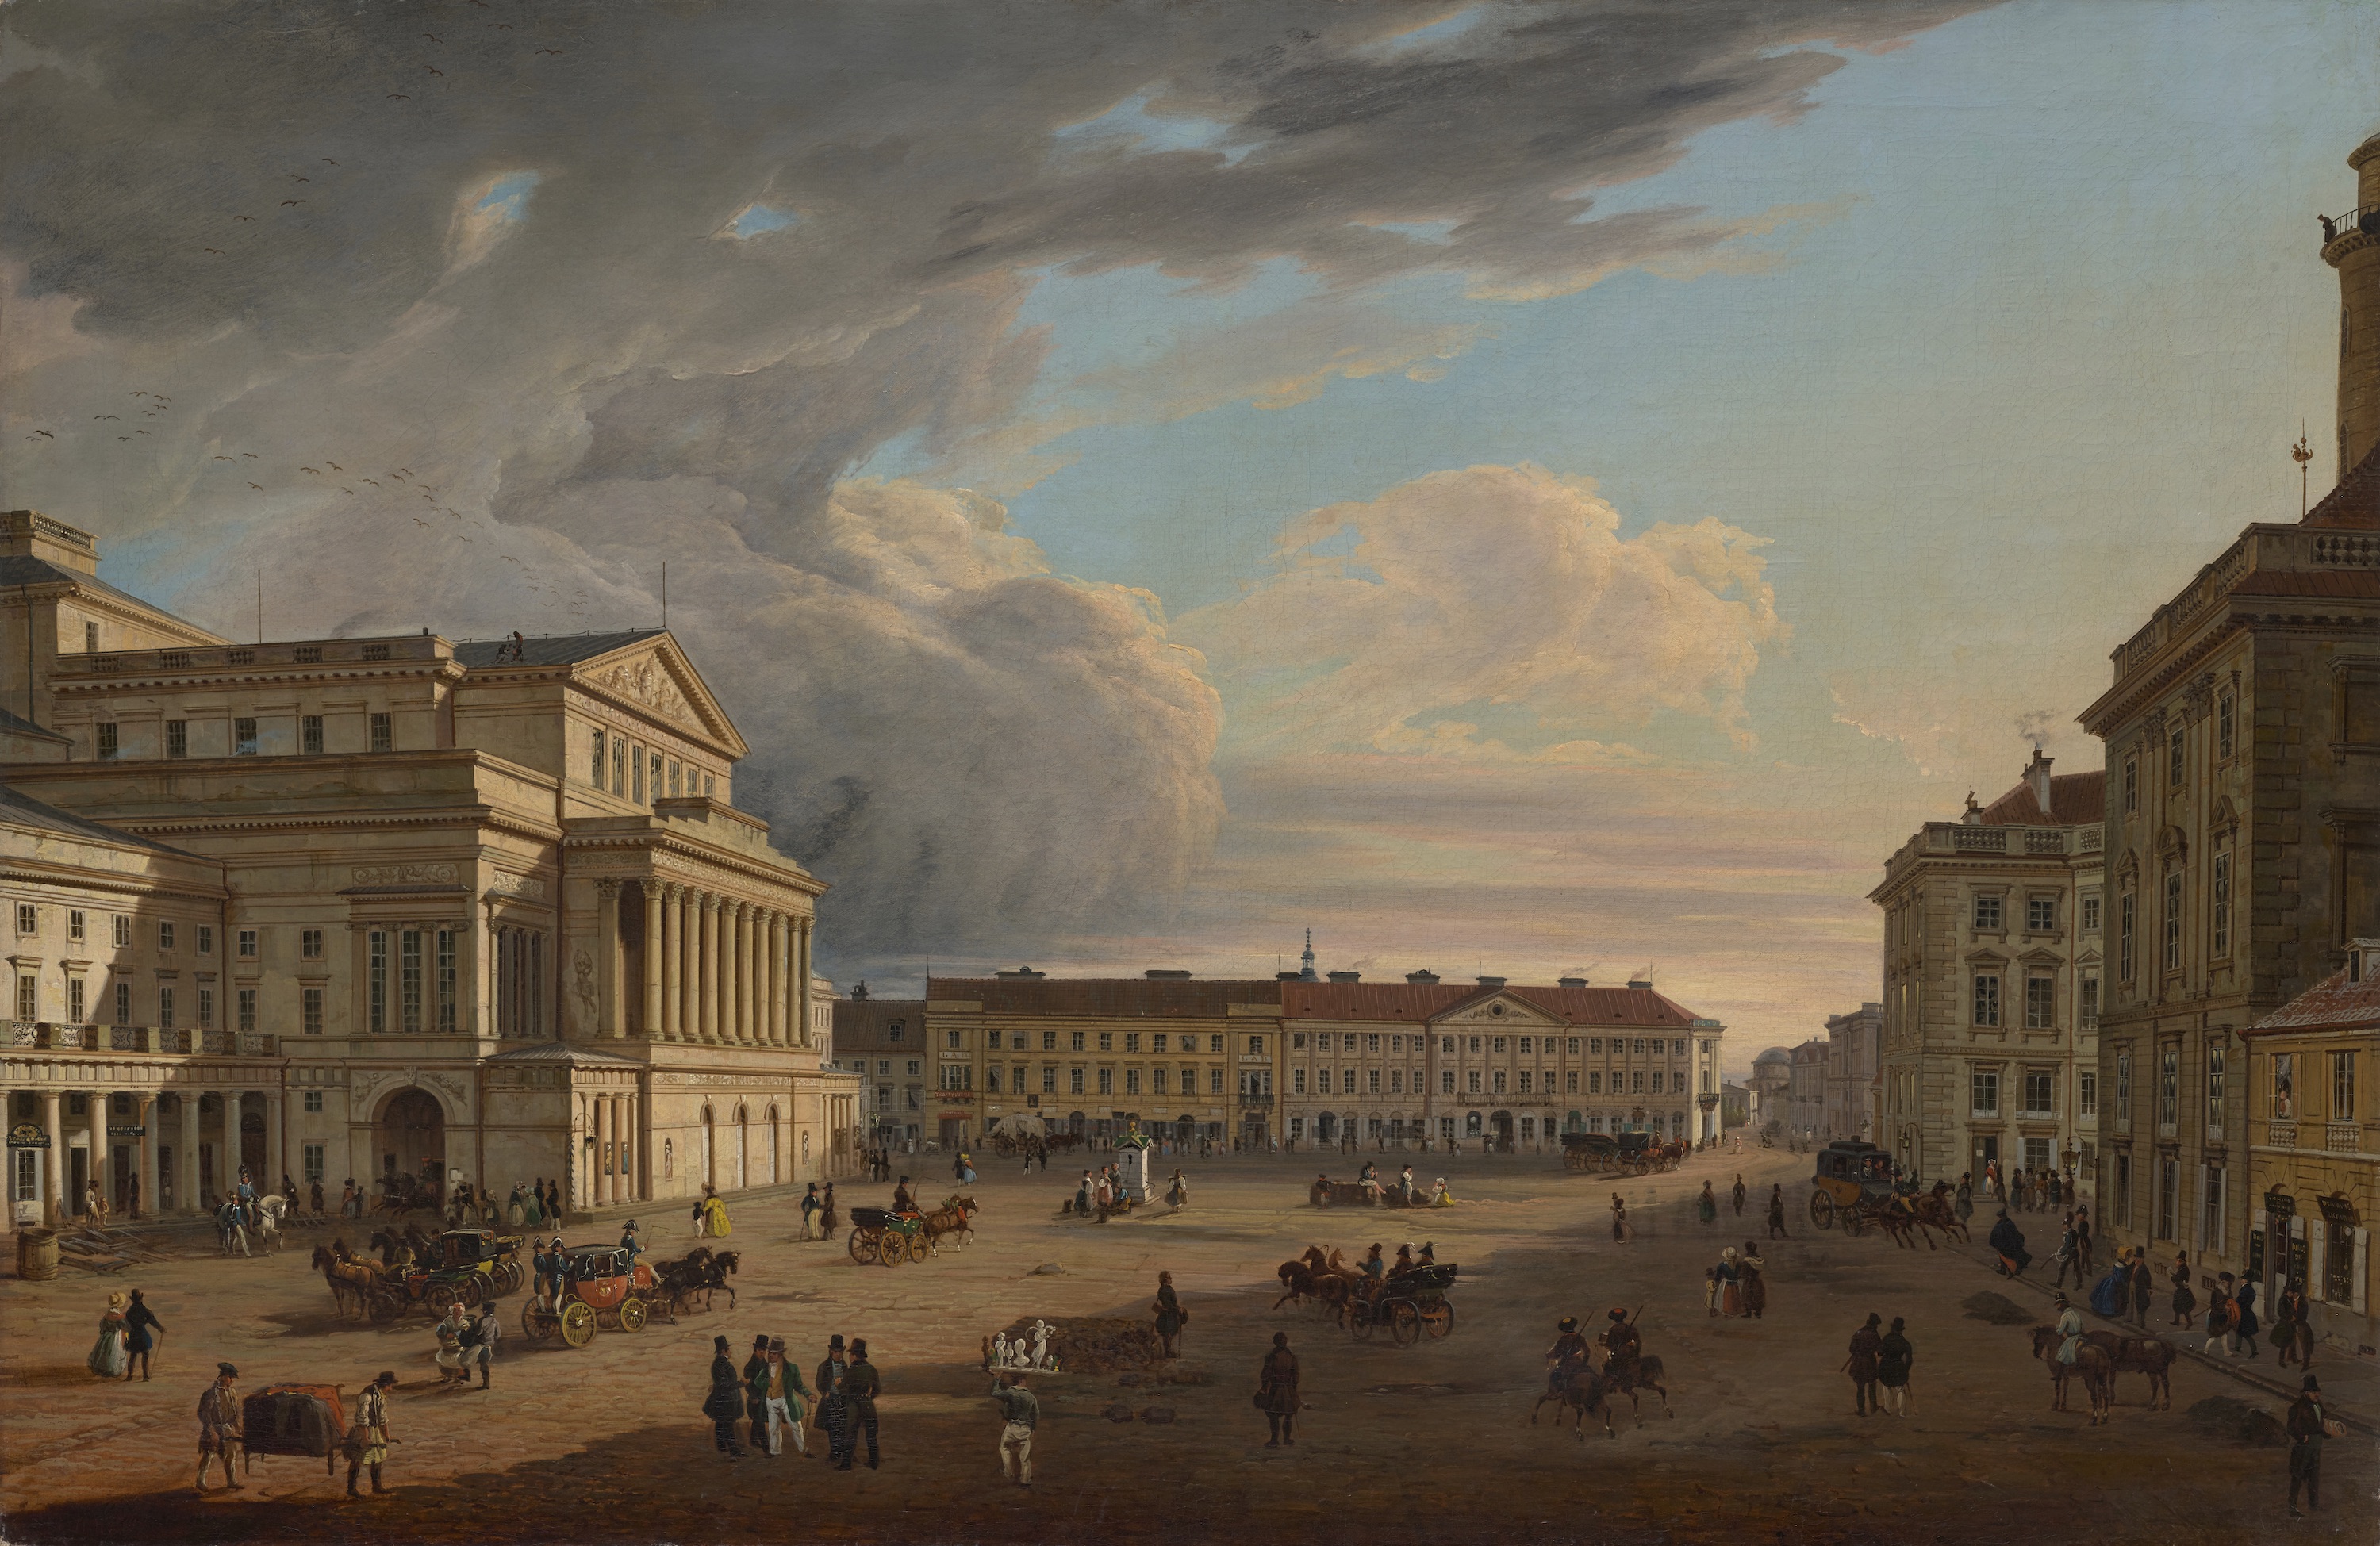 剧院广场 by 马尔钦· 扎莱斯基 - 1838 華沙博物館